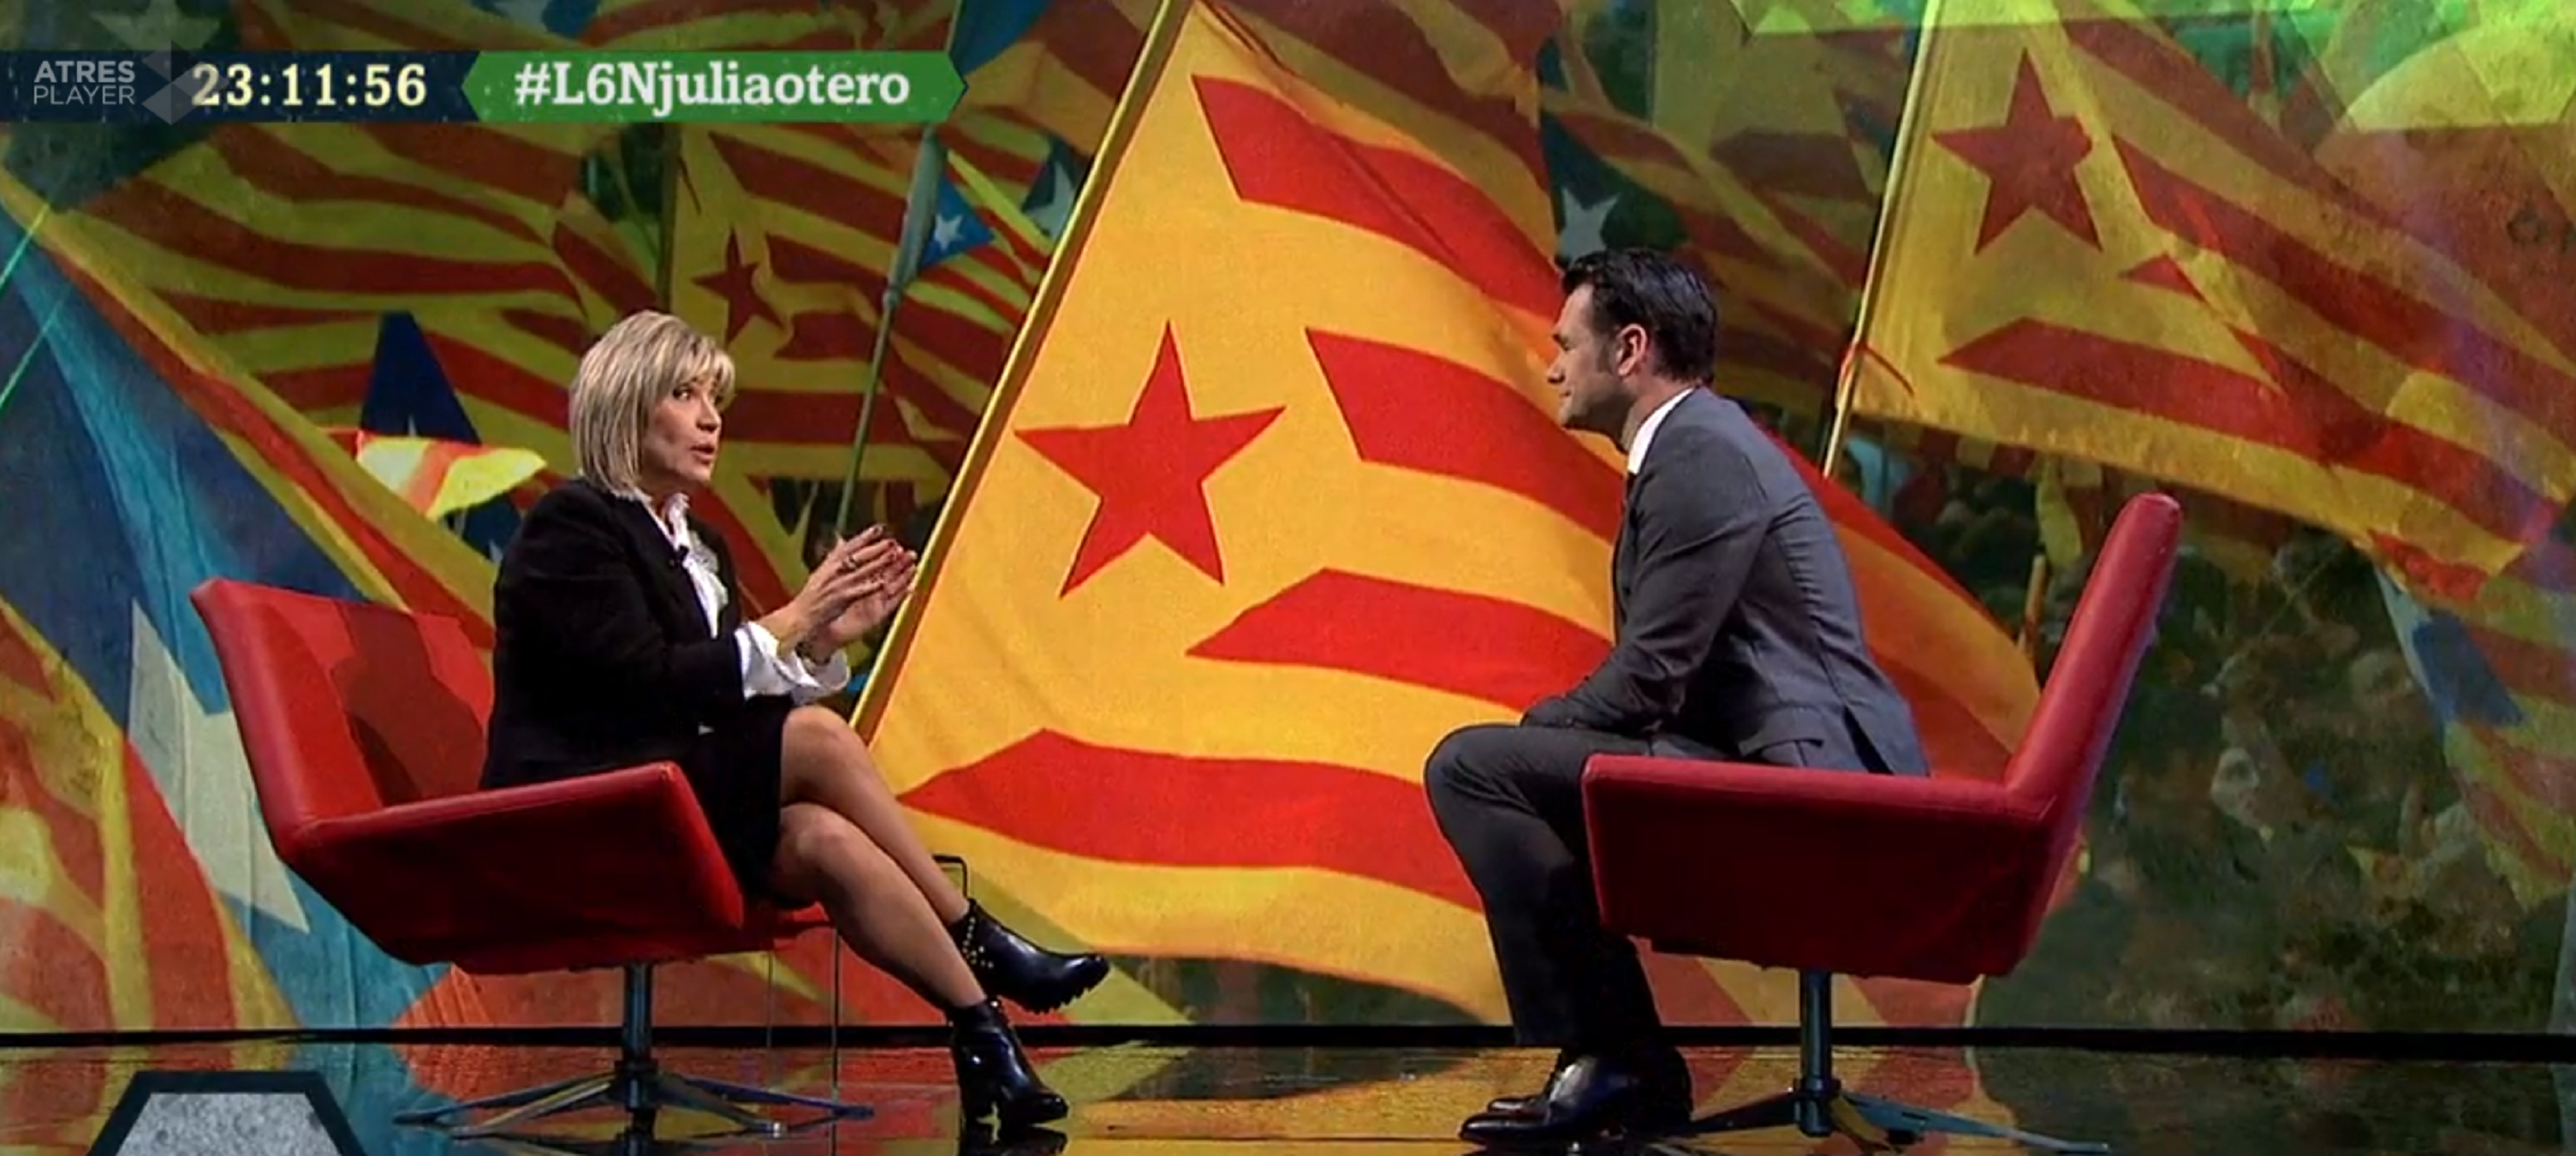 Crítiques a Júlia Otero que vaticina quan serà Catalunya independent